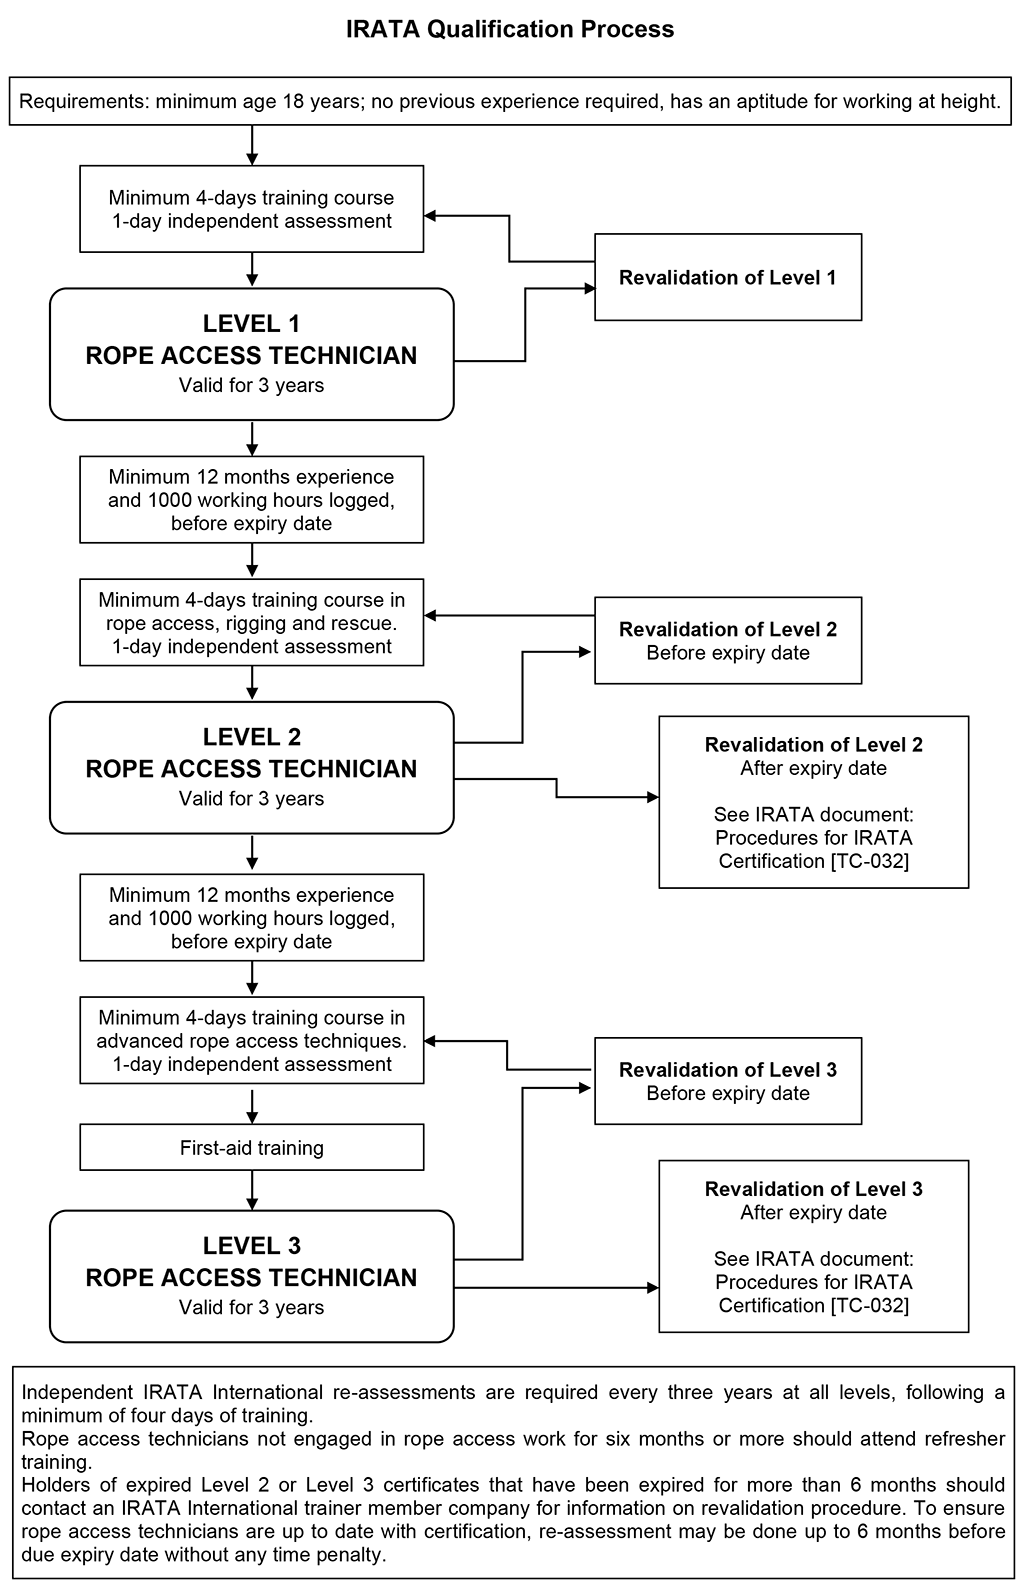 IRATA Qualification Process diagram